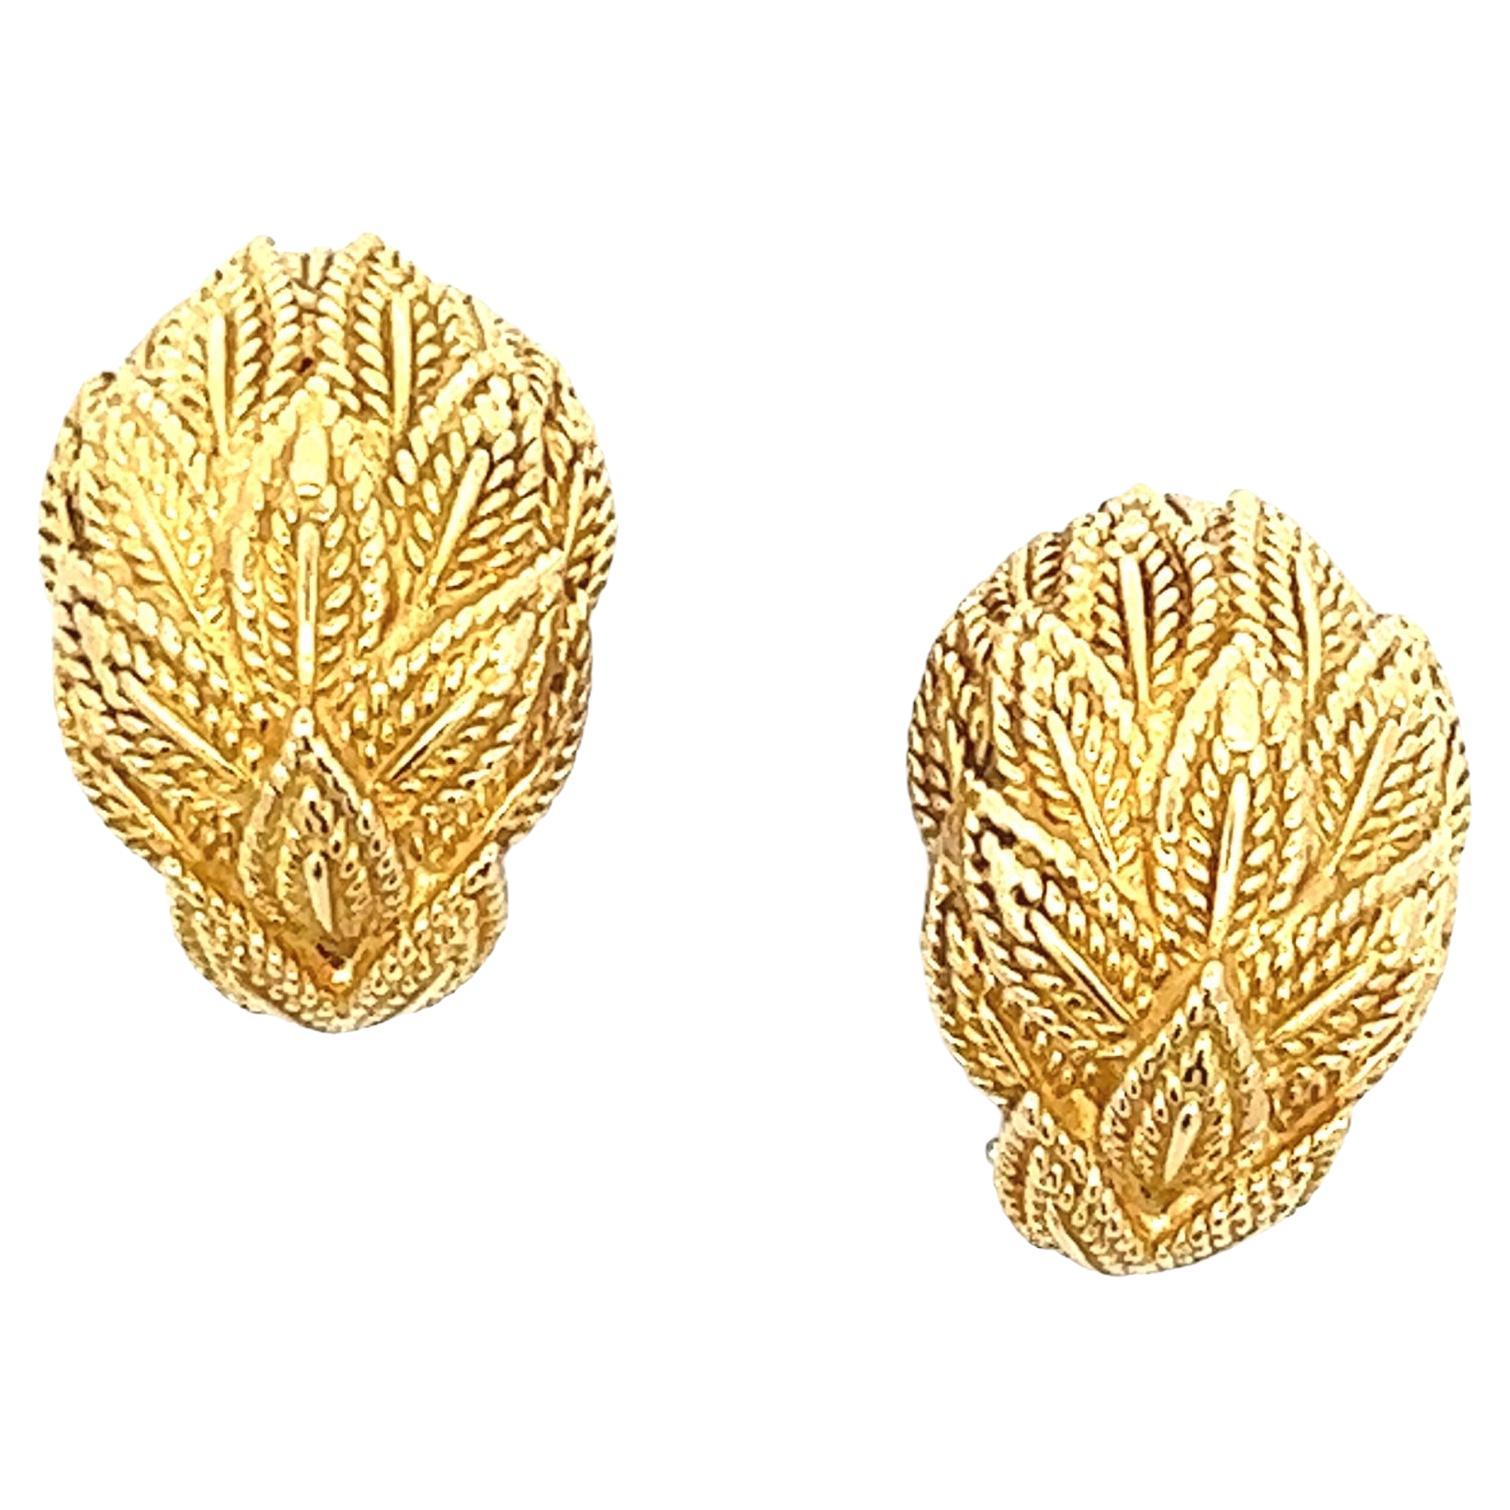 Tiffany & Co. Leaf Motif Textured 18 Karat Yellow Gold Earclip Estate Earrings